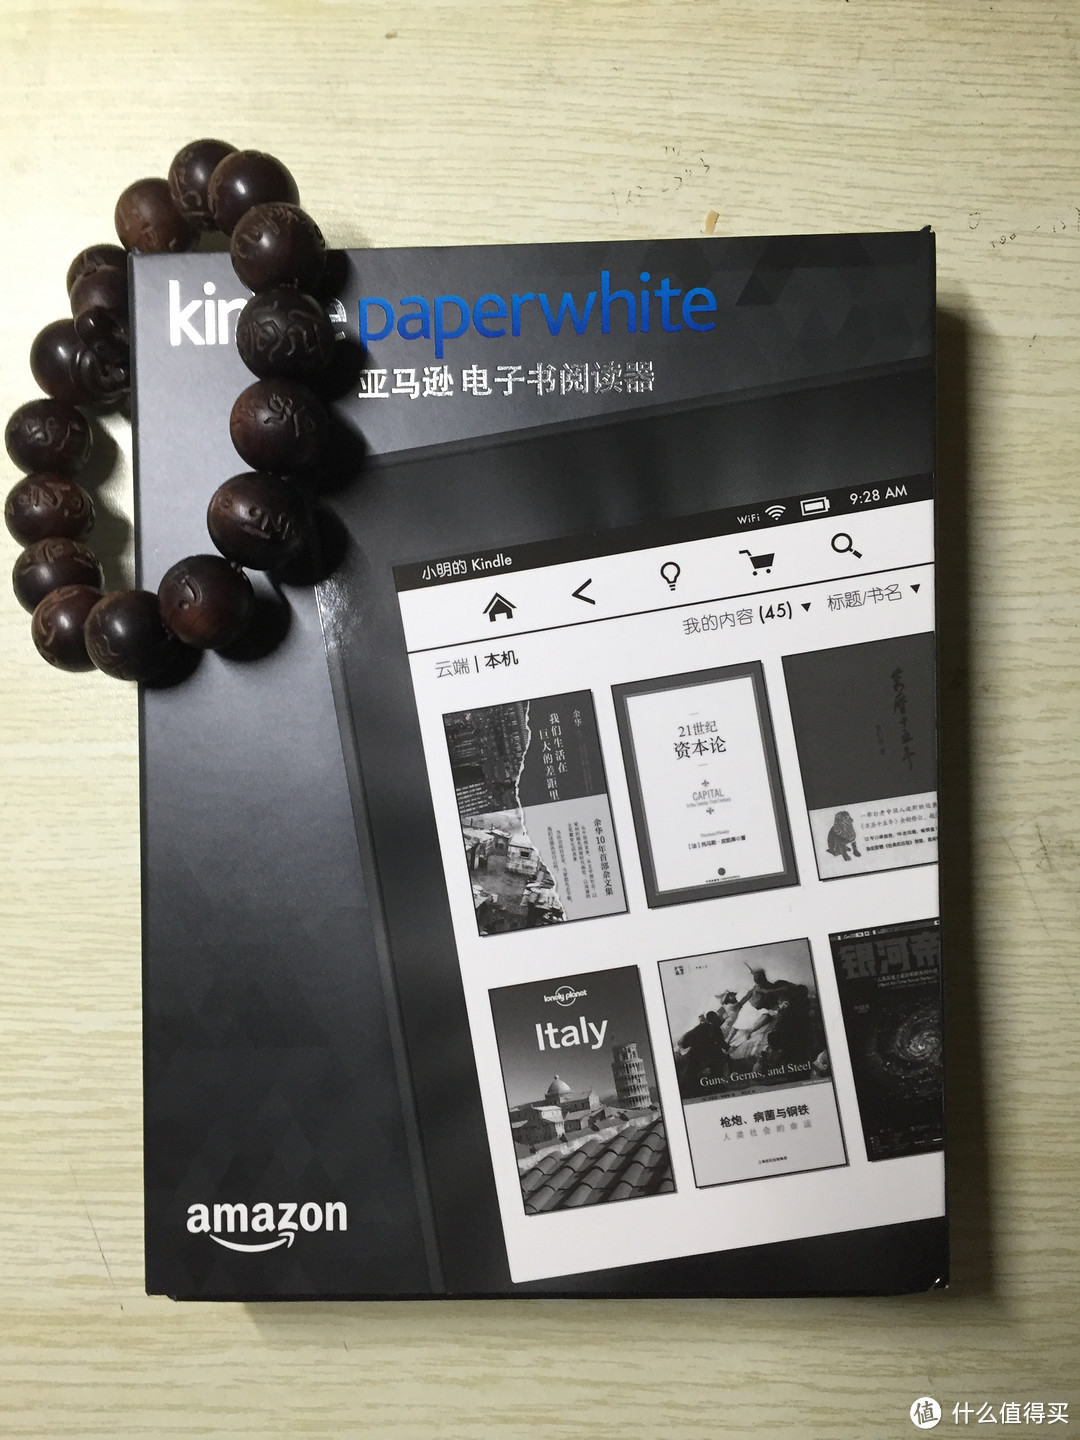 静下心来好好读书——Amazon 亚马逊 Kindle Paperwhite 3 电子书阅读器 开箱和使用技巧简介